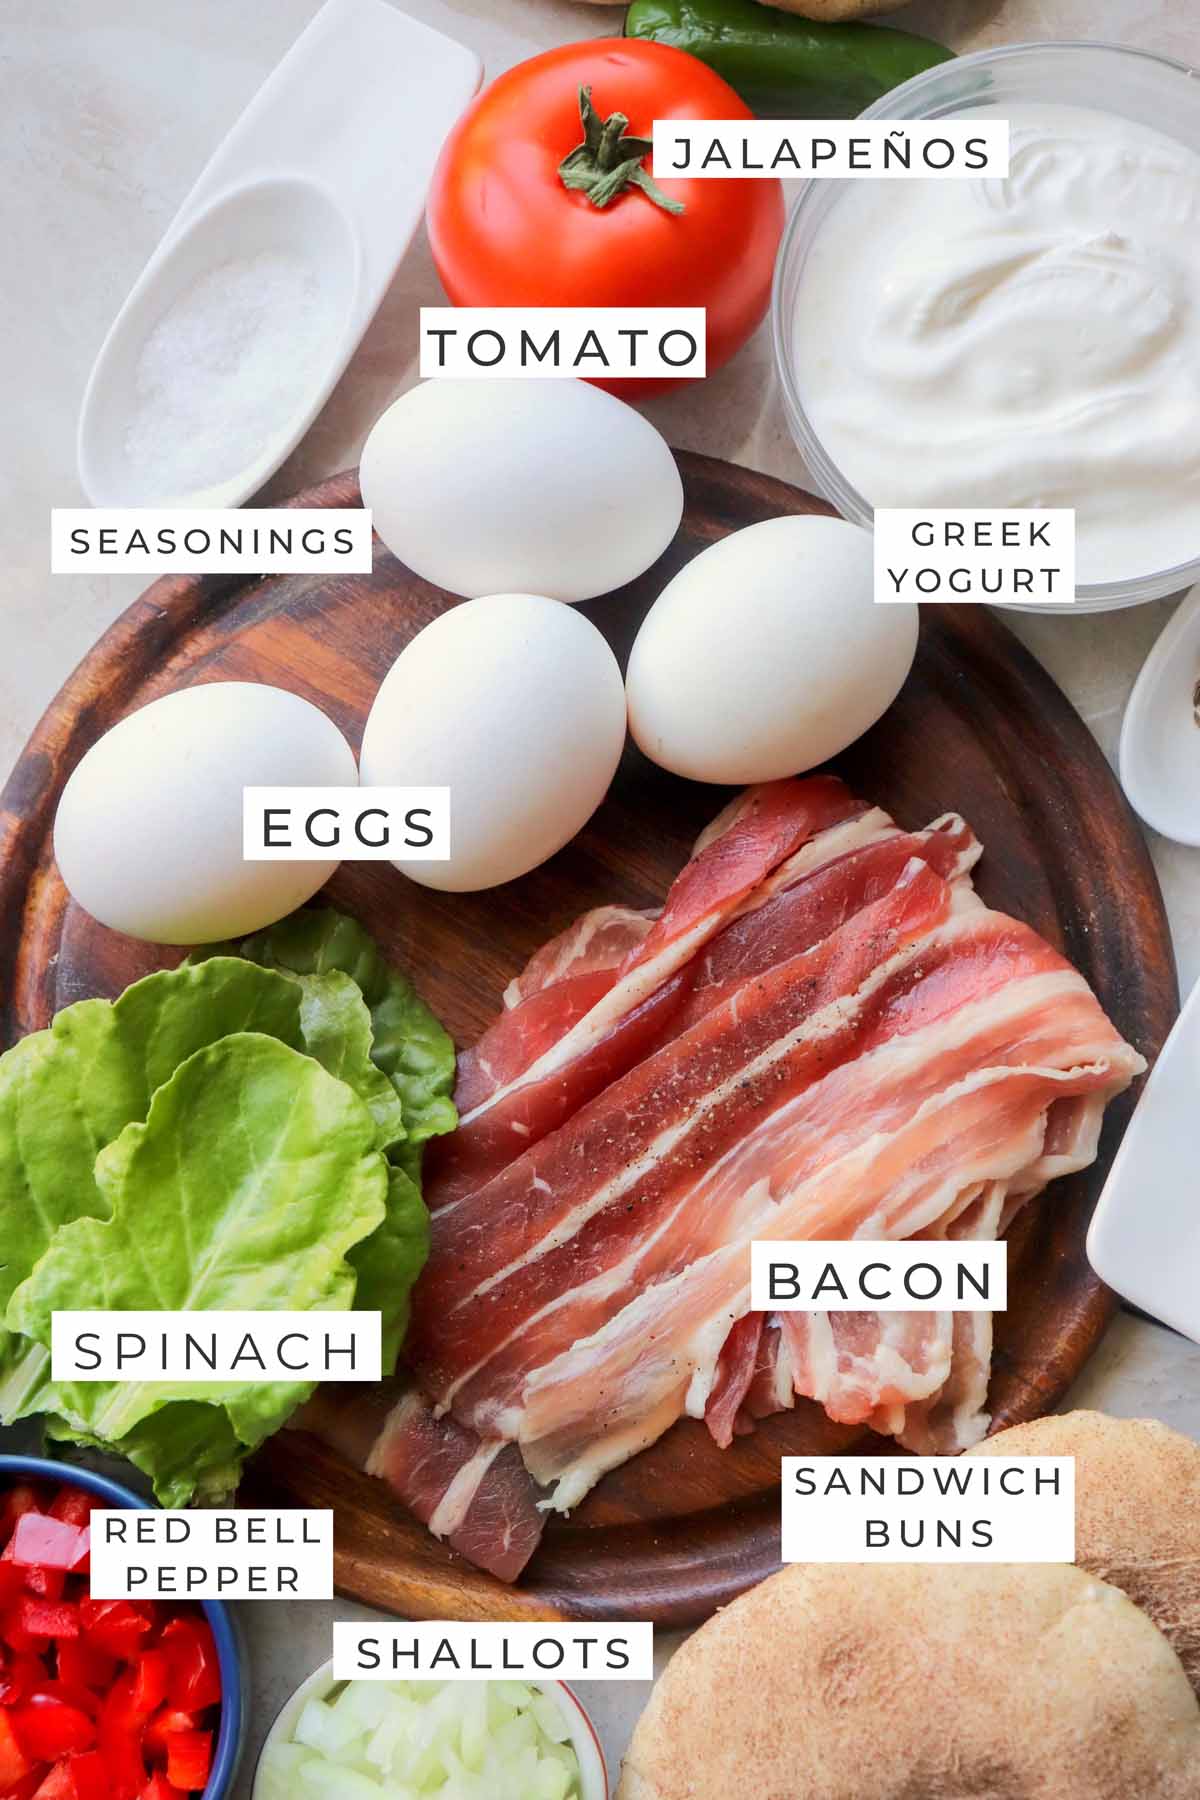 breakfast sandwich labeled ingredients.